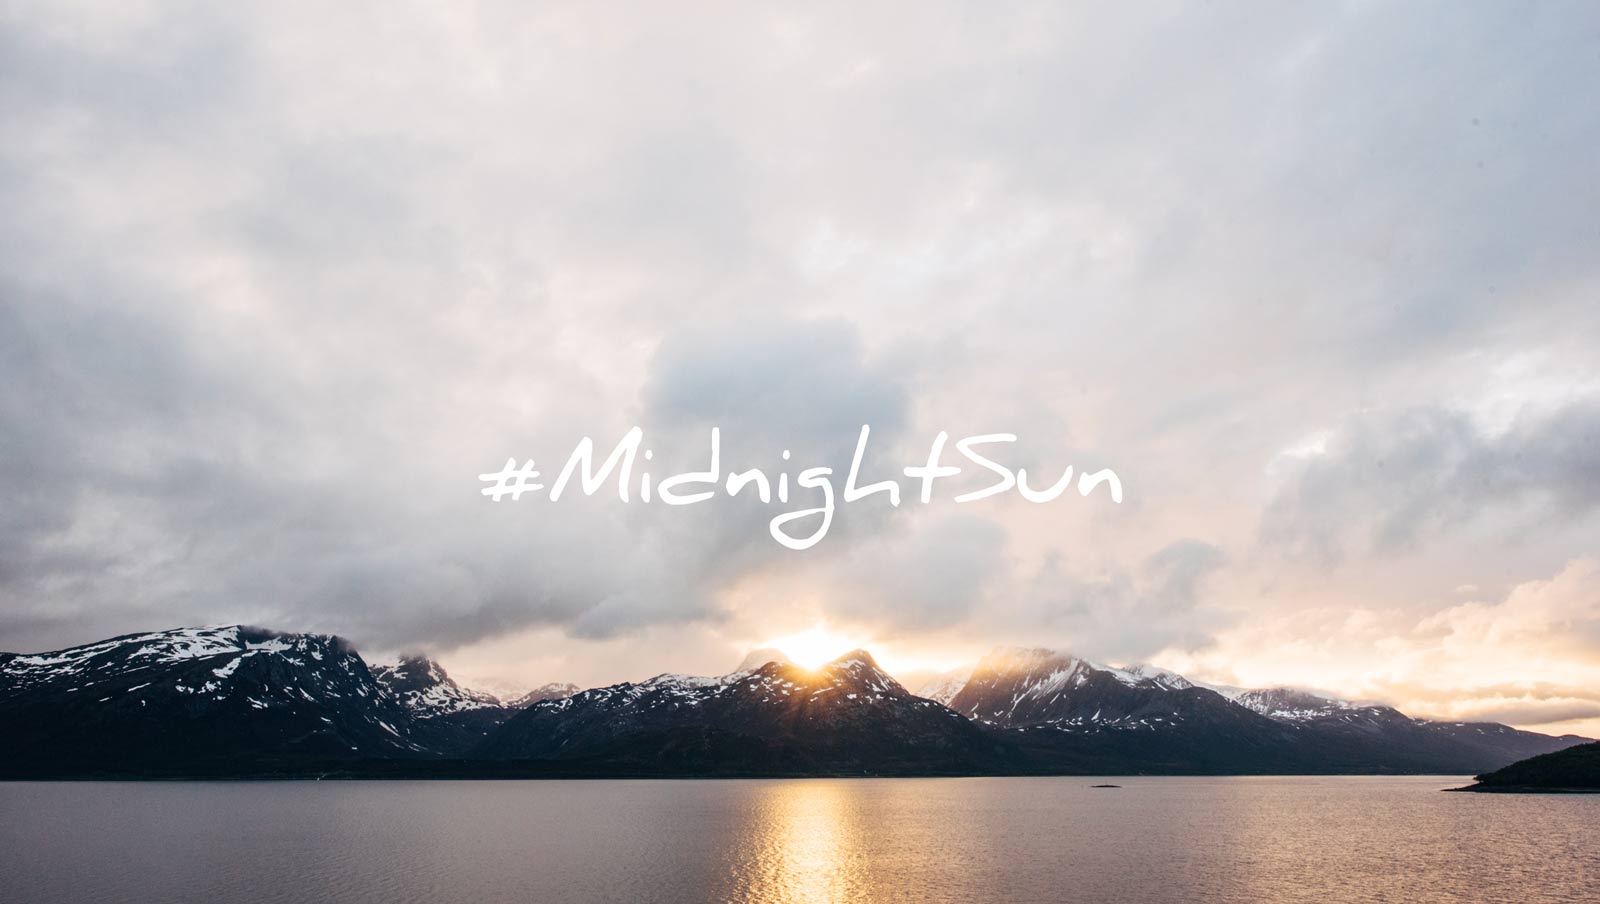 midnight sun norvege